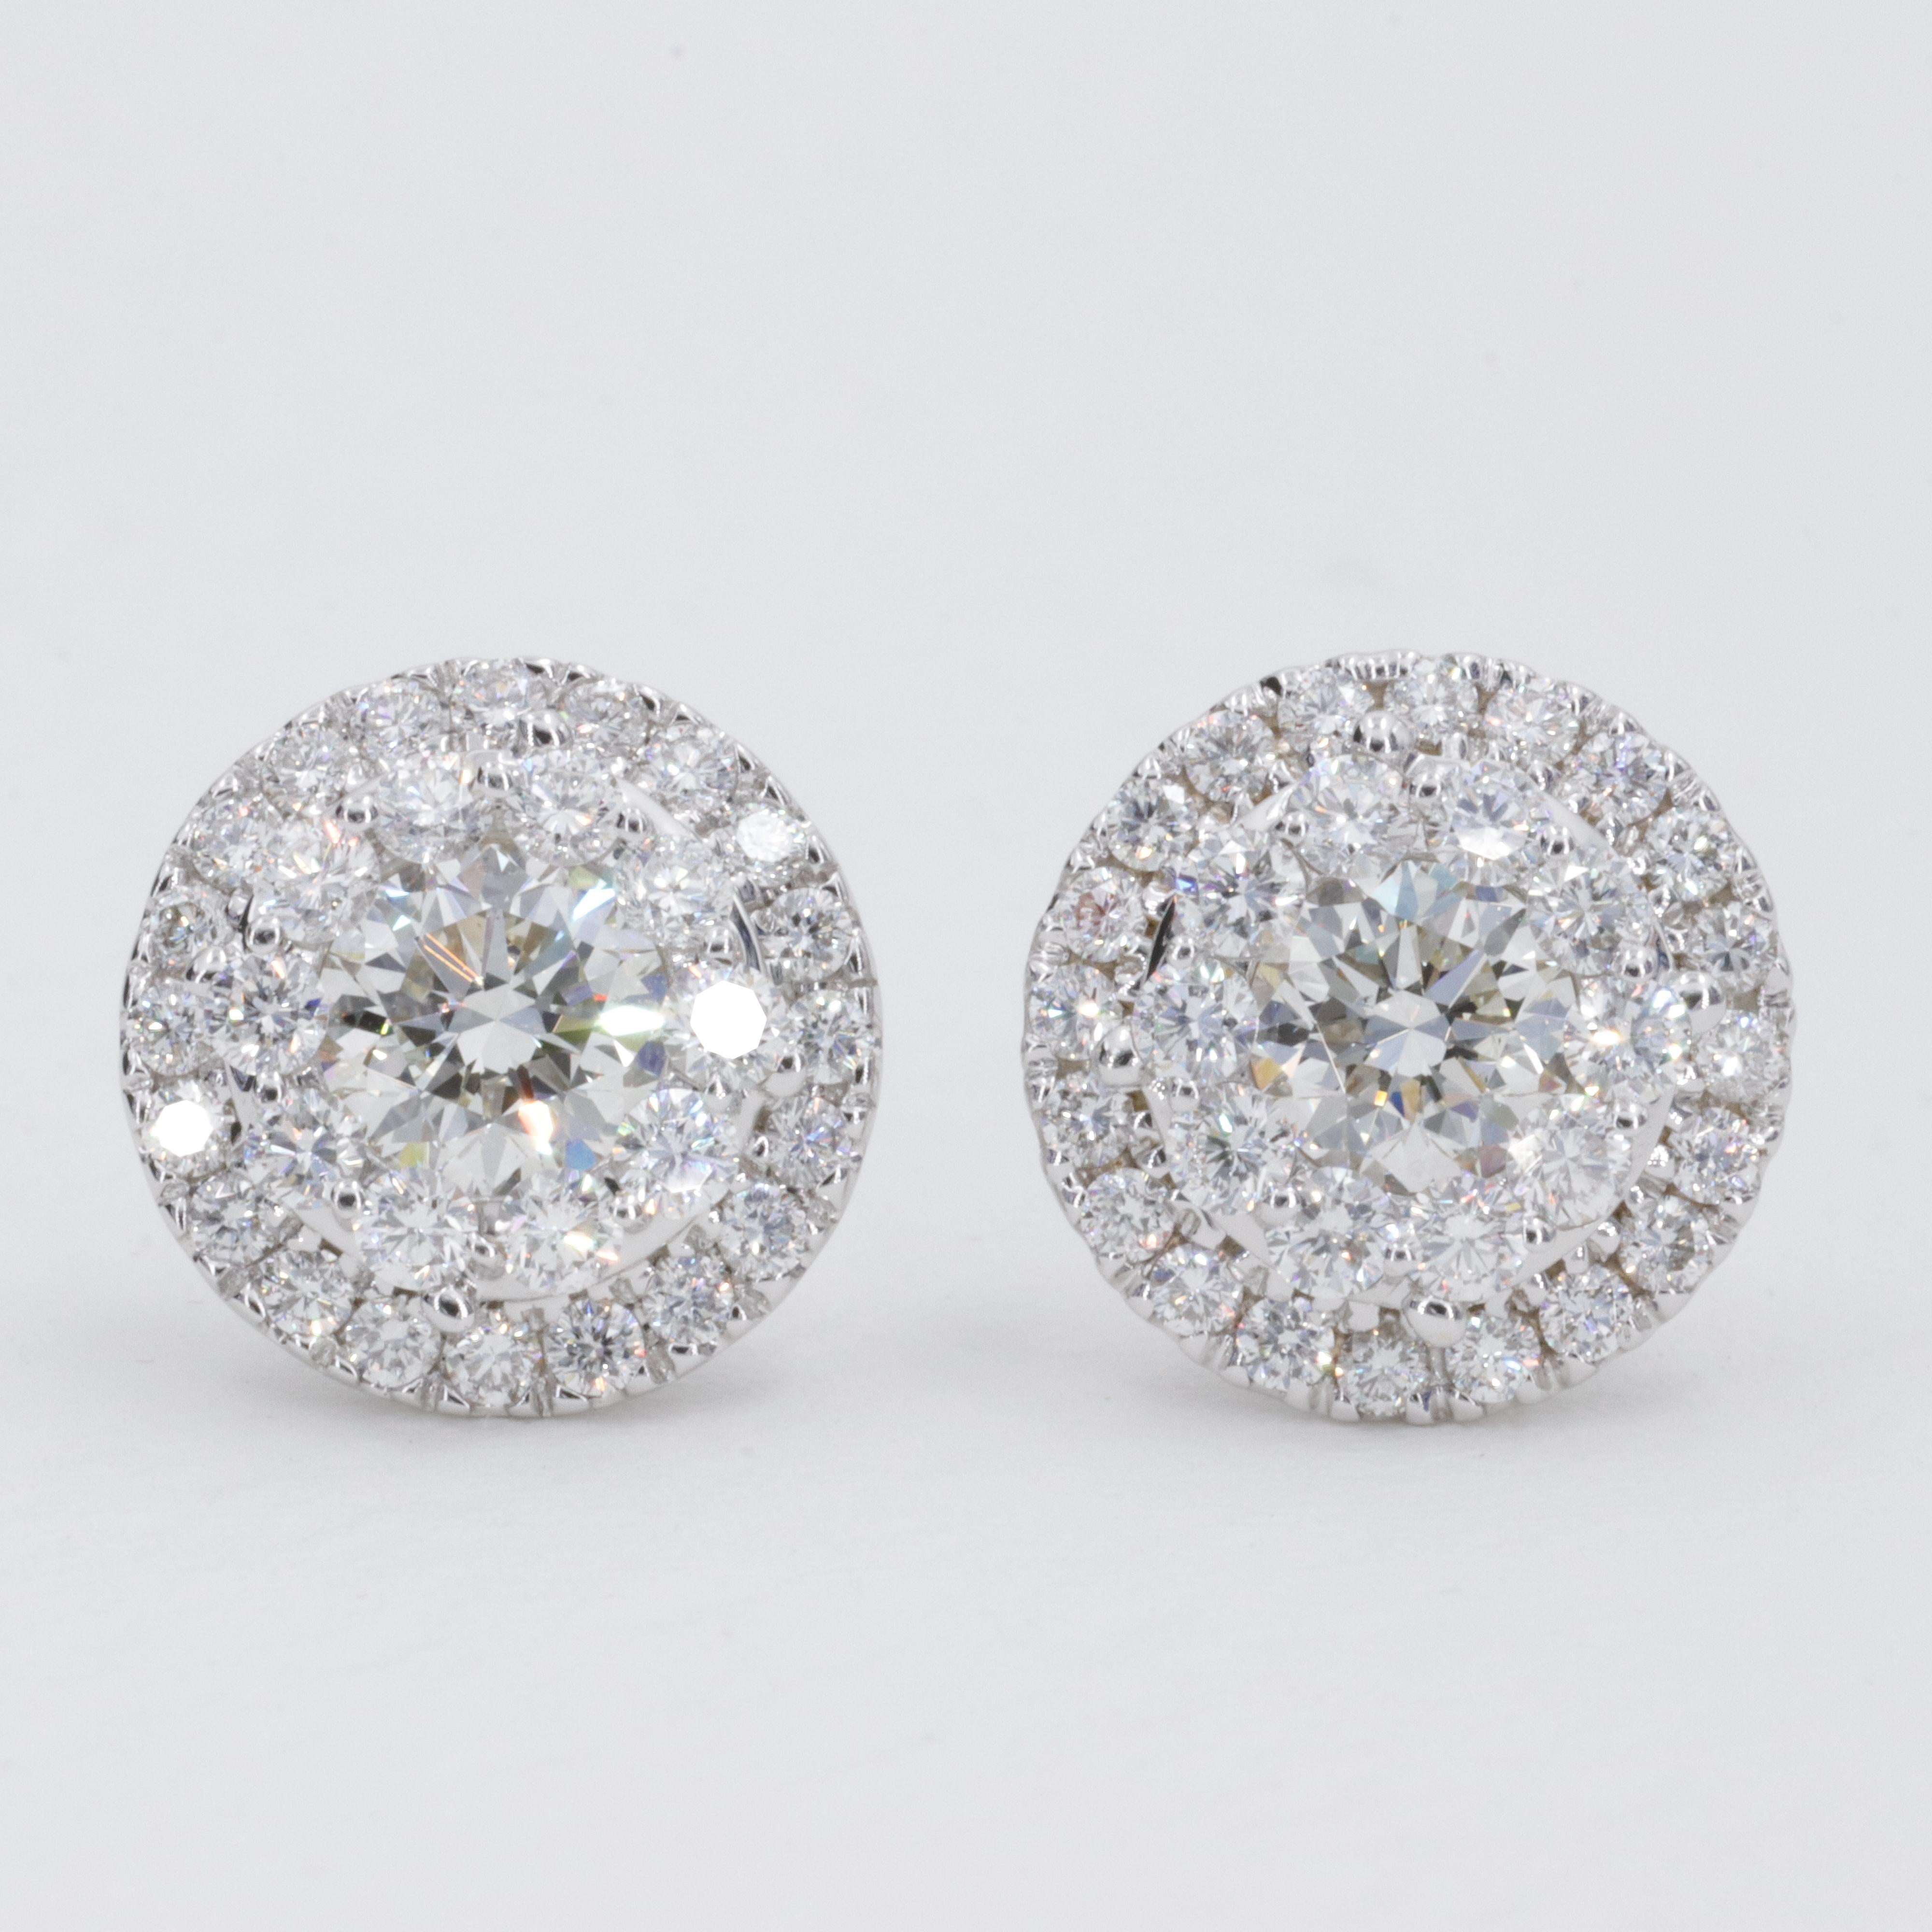 Ein wunderschönes Paar runder Brillantschliff-Diamant-Ohrstecker mit einem Gewicht von ca. 2,50 Karat. Die Diamanten sind fein geschliffen und proportioniert und strahlen eine unglaubliche Brillanz aus. 

Die Diamanten in der Mitte des Steins sind